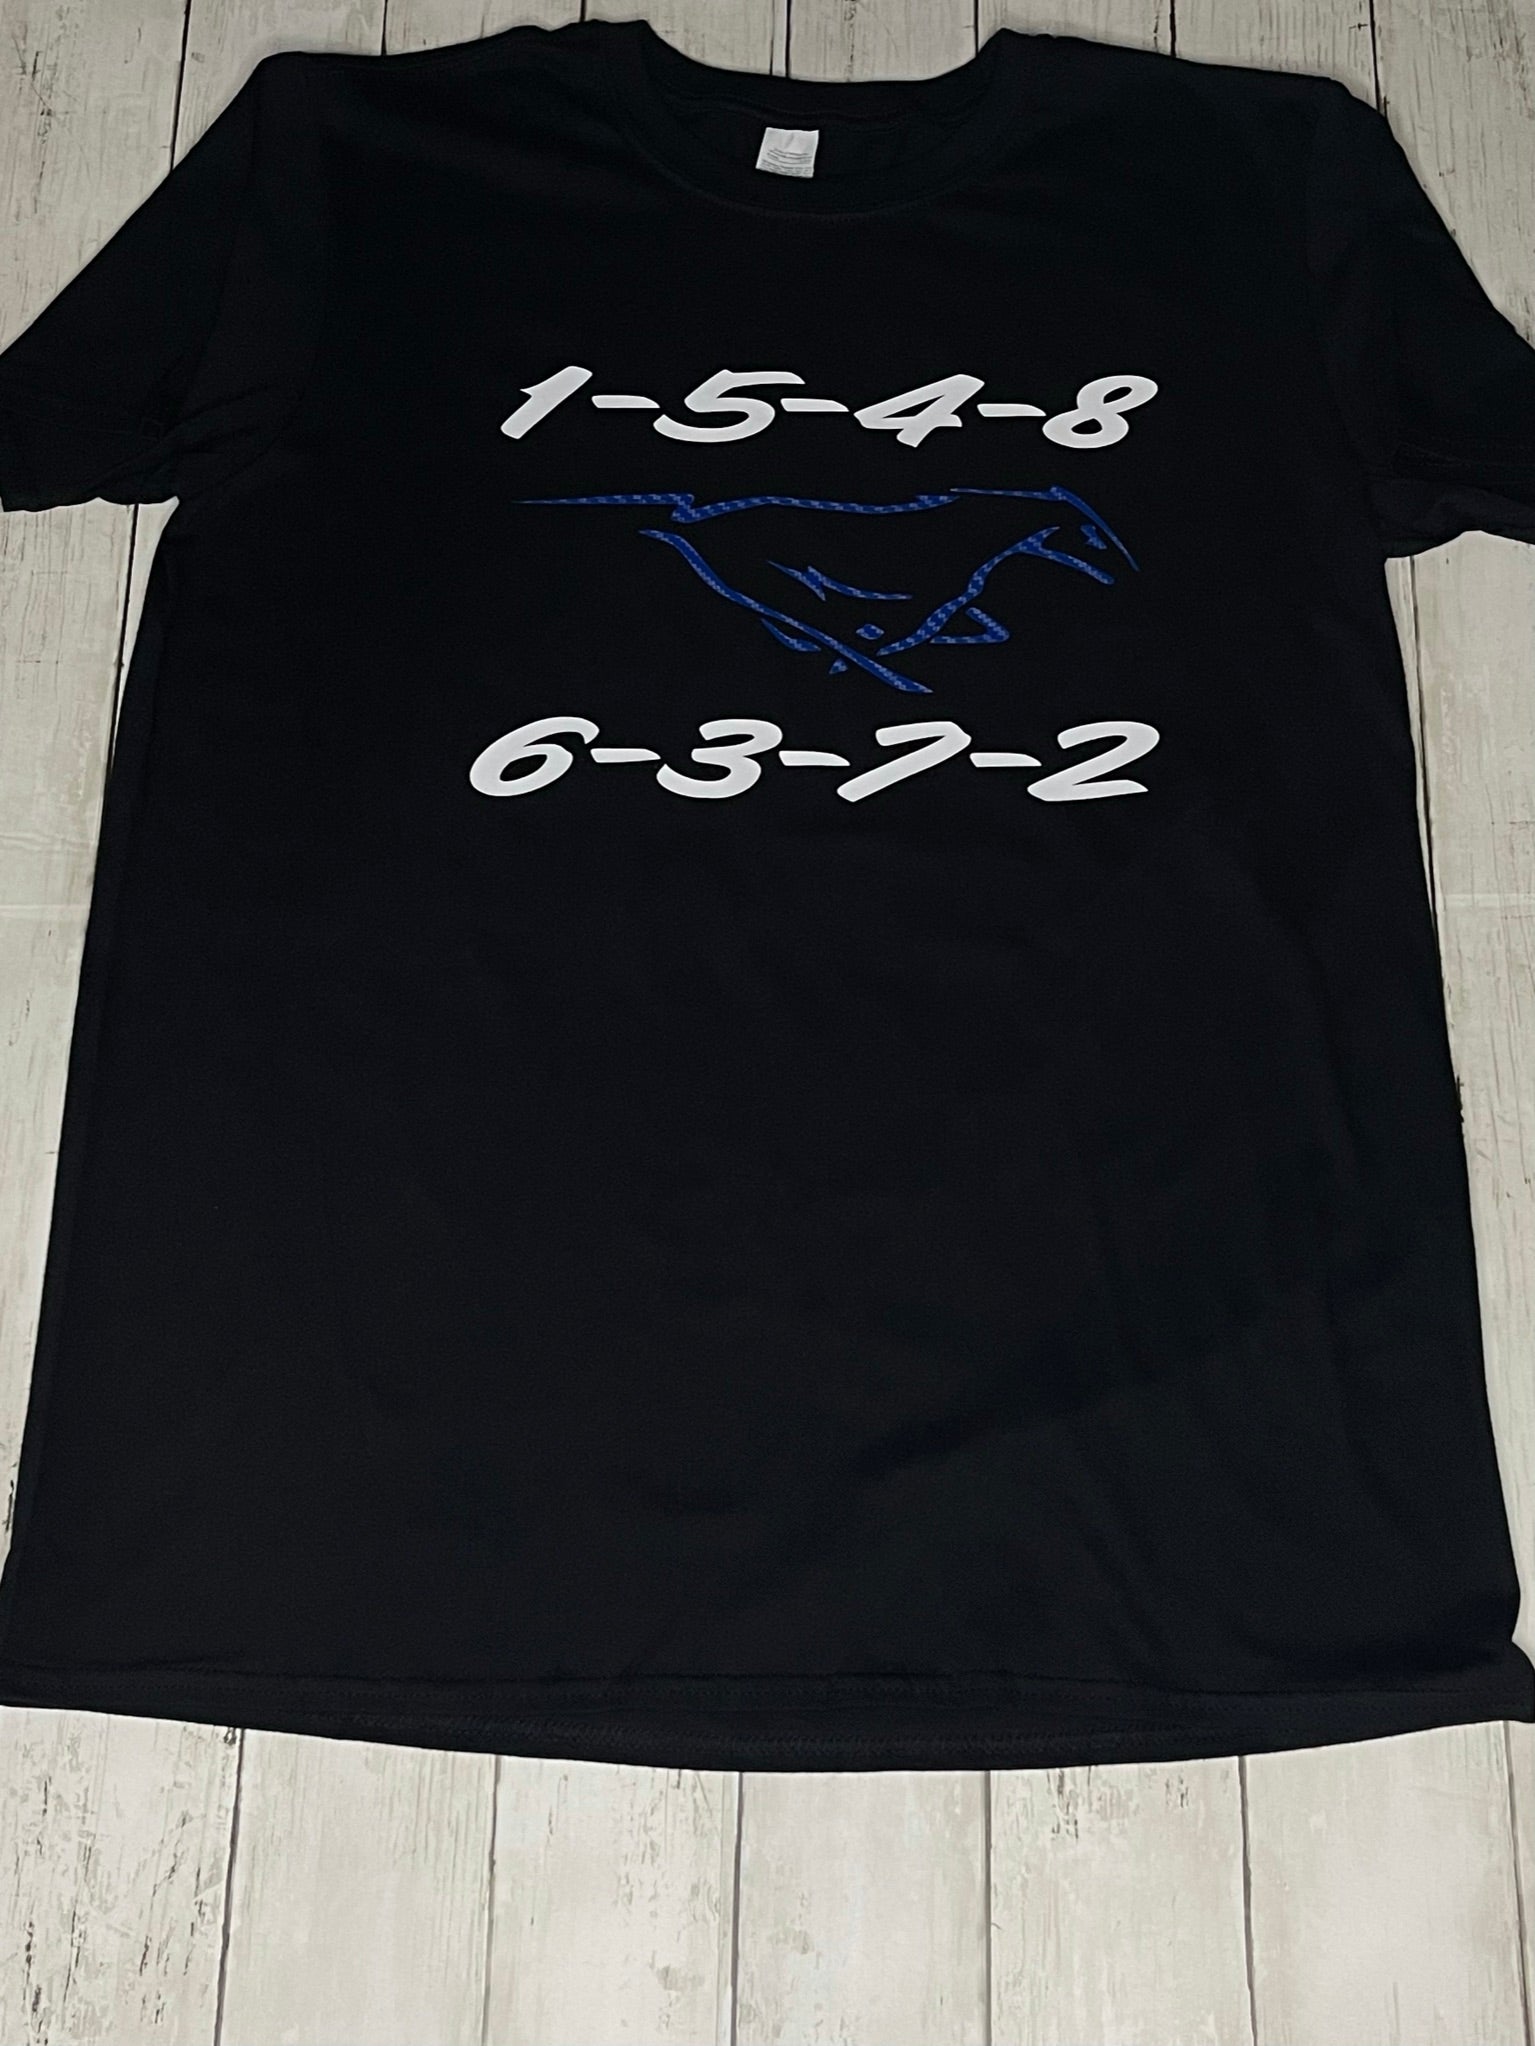 – t-Shirt Werx Mustang Coyote Firing Shirt order Tee